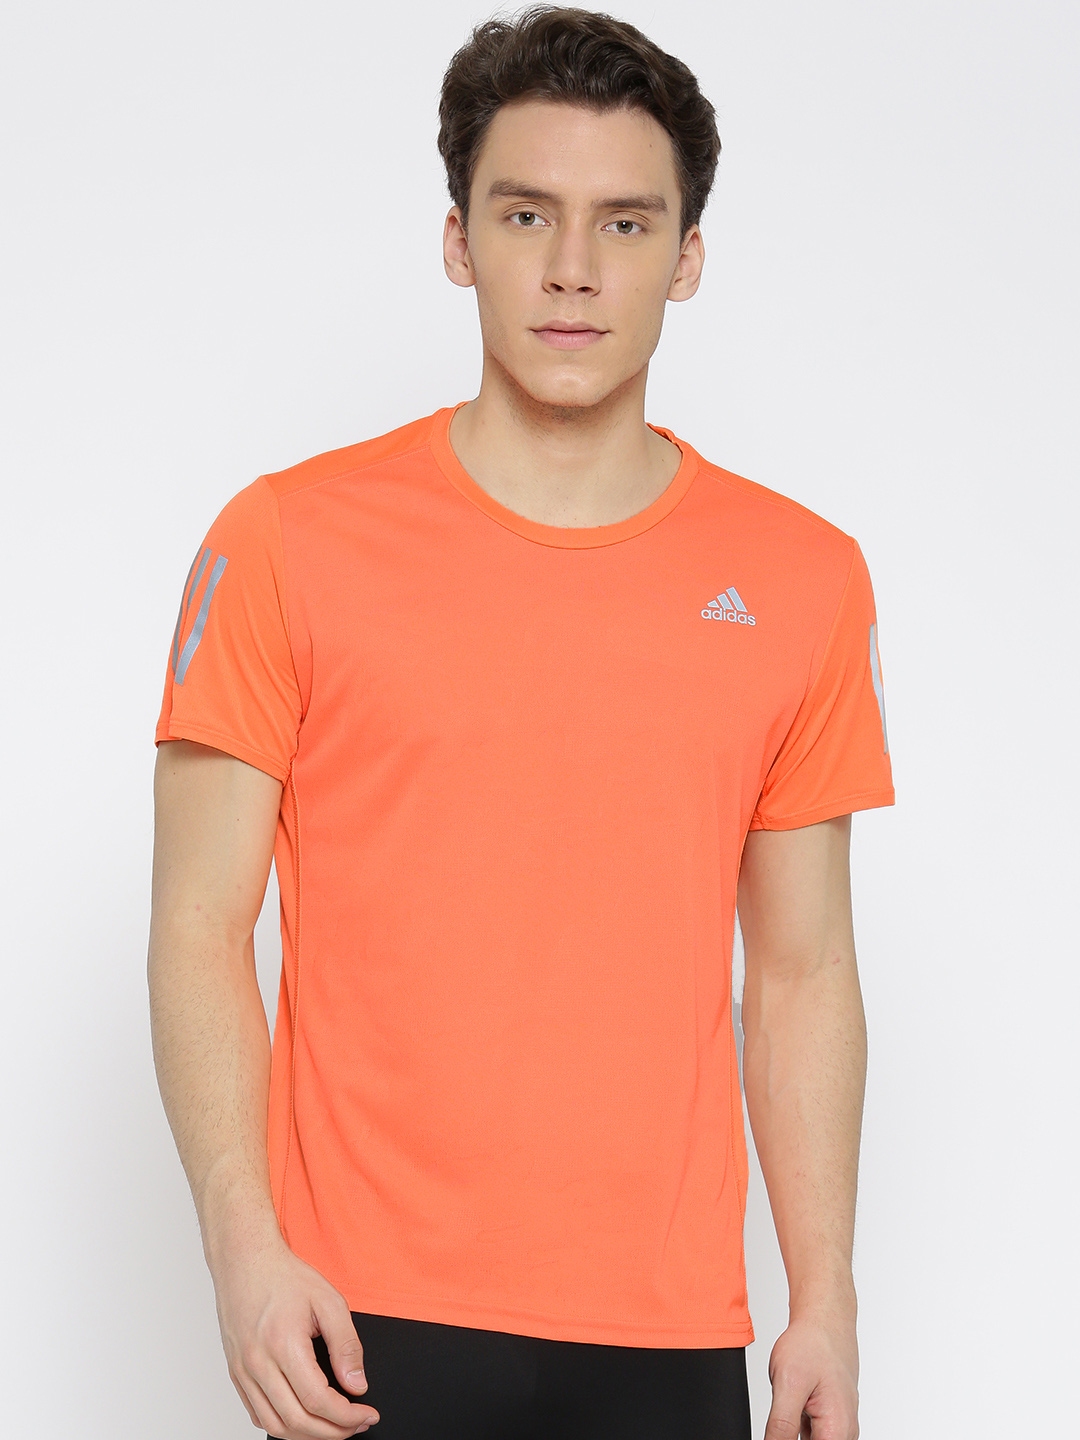 alias diefstal Onrecht Buy ADIDAS Men Orange Response Solid Running T Shirt - Tshirts for Men  2450770 | Myntra